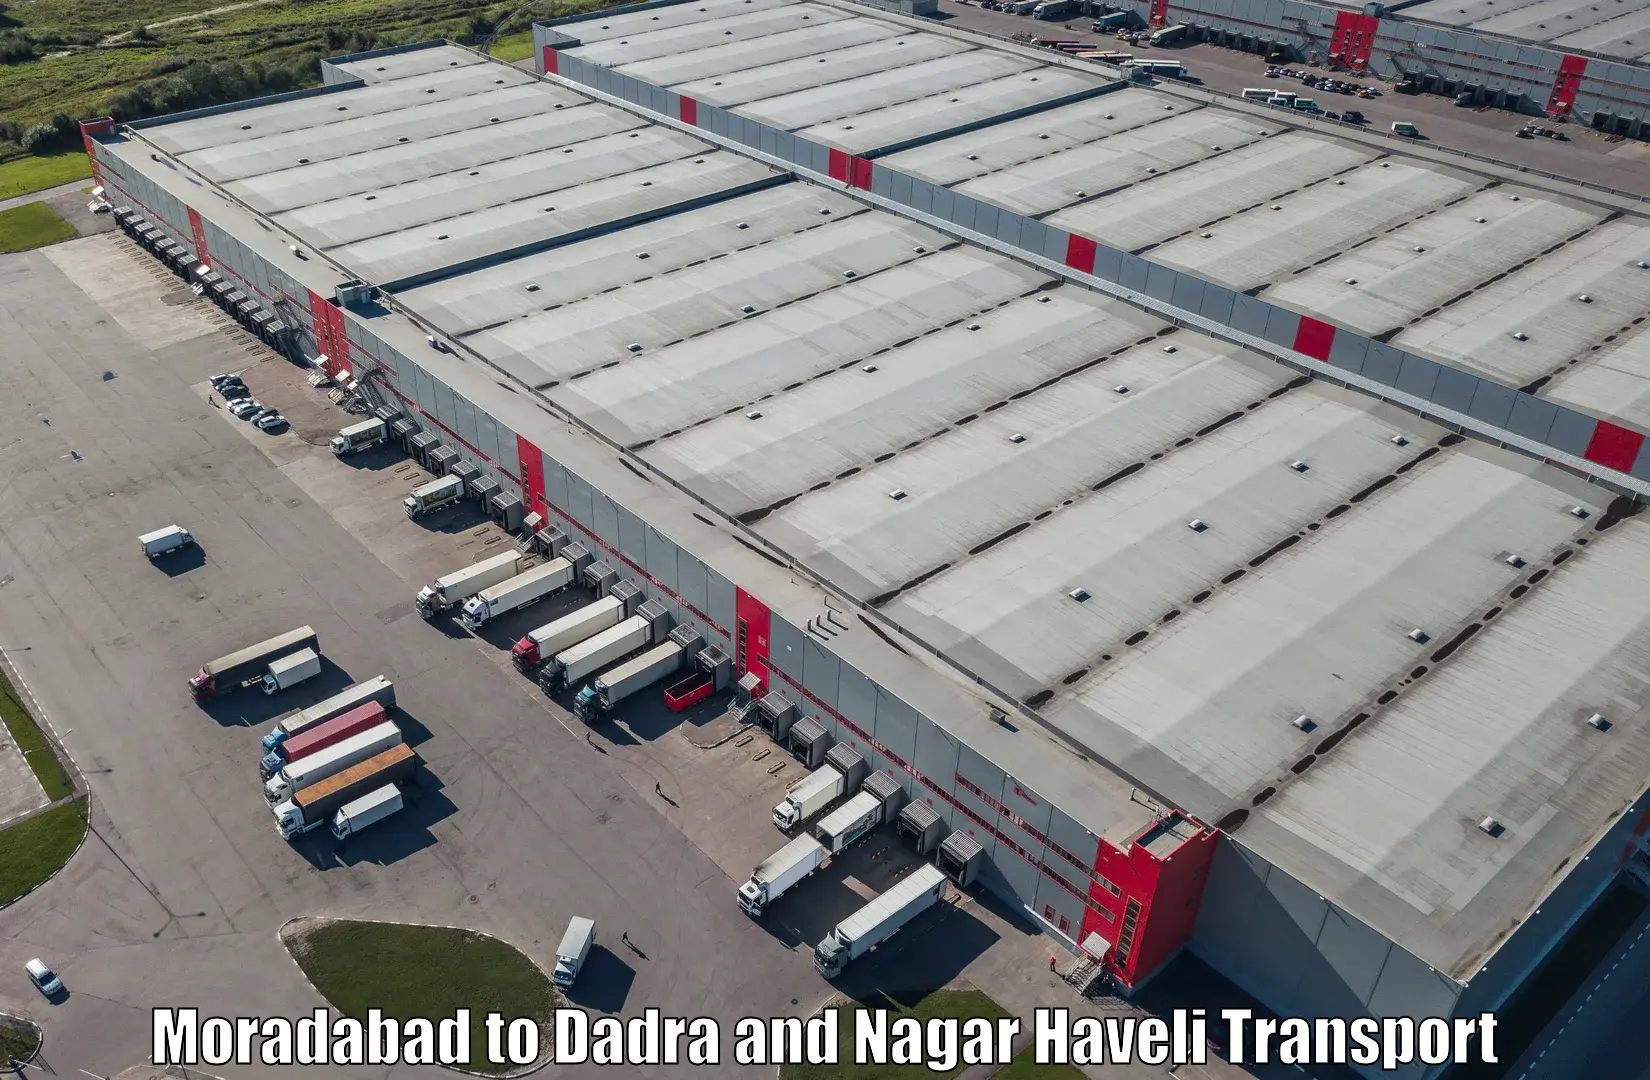 International cargo transportation services Moradabad to Silvassa